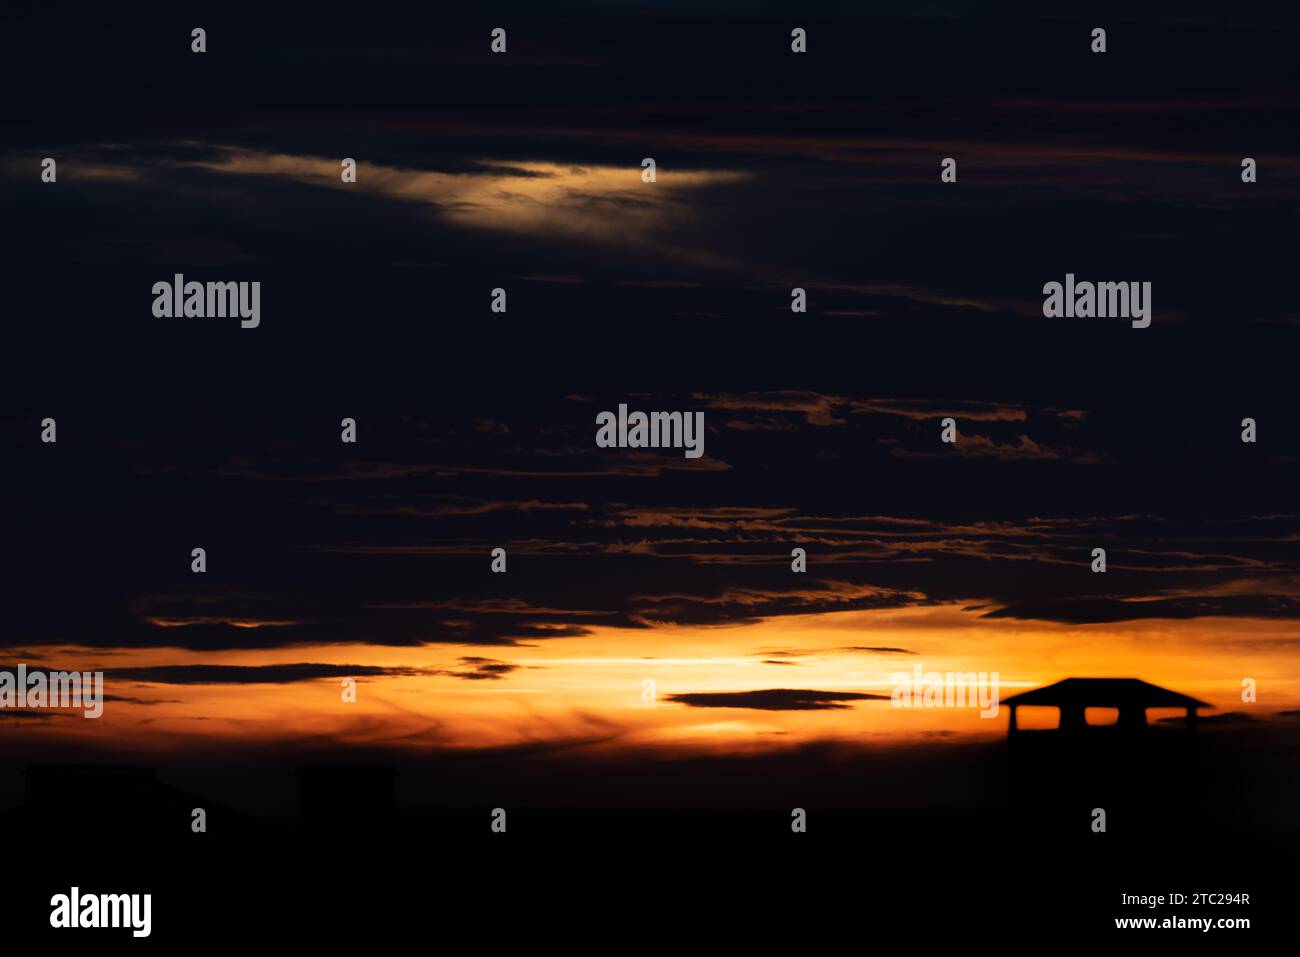 Sonnenuntergang Himmel Hintergrund Panorama Konzept. Blick von oben auf den Horizont Abendhimmel bei Sonnenuntergang und Morgensonnenaufgang in der farbenfrohen Stadt mit Kopierraum. Leere schöne s Stockfoto